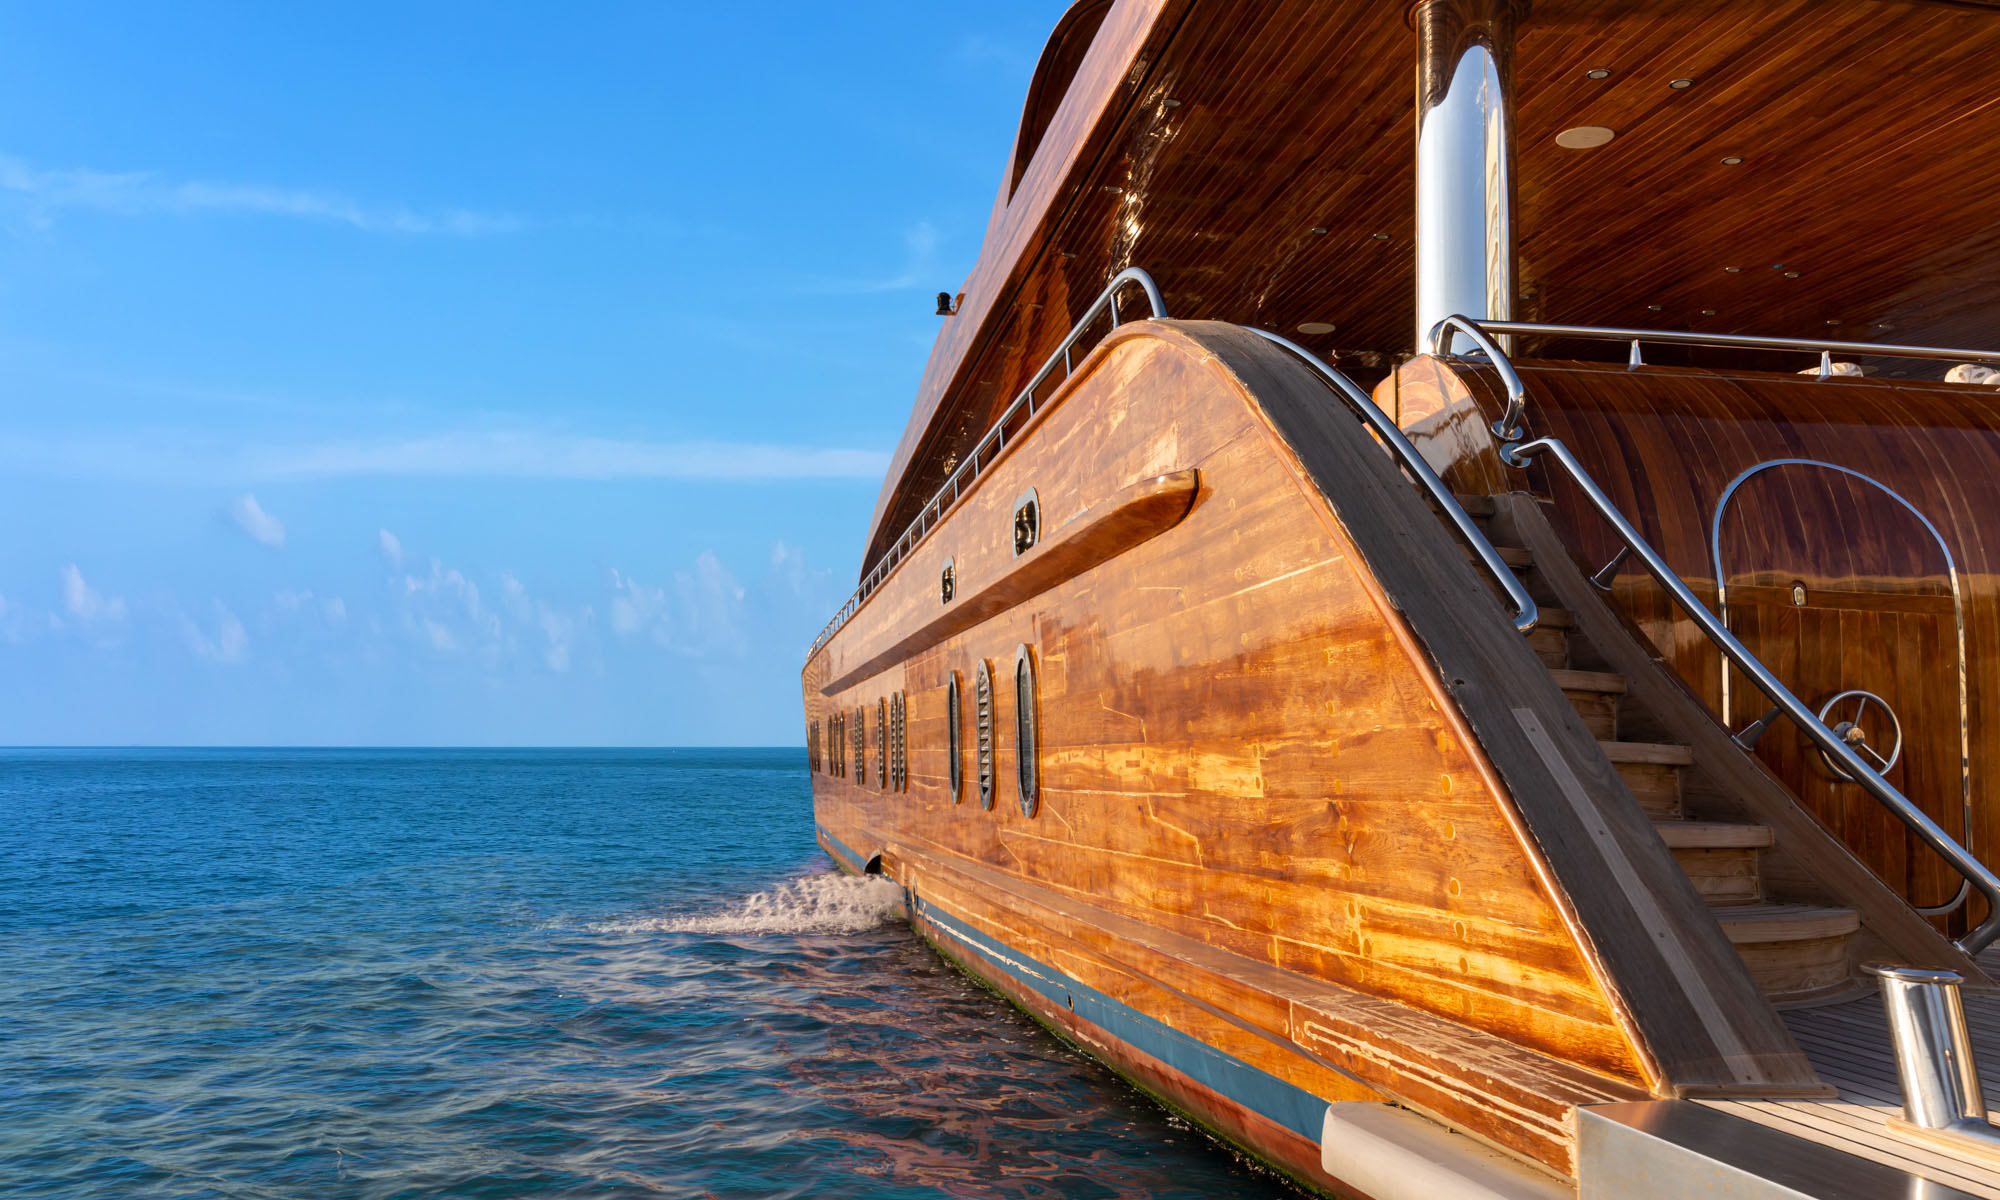 world's largest wooden superyacht interior 2